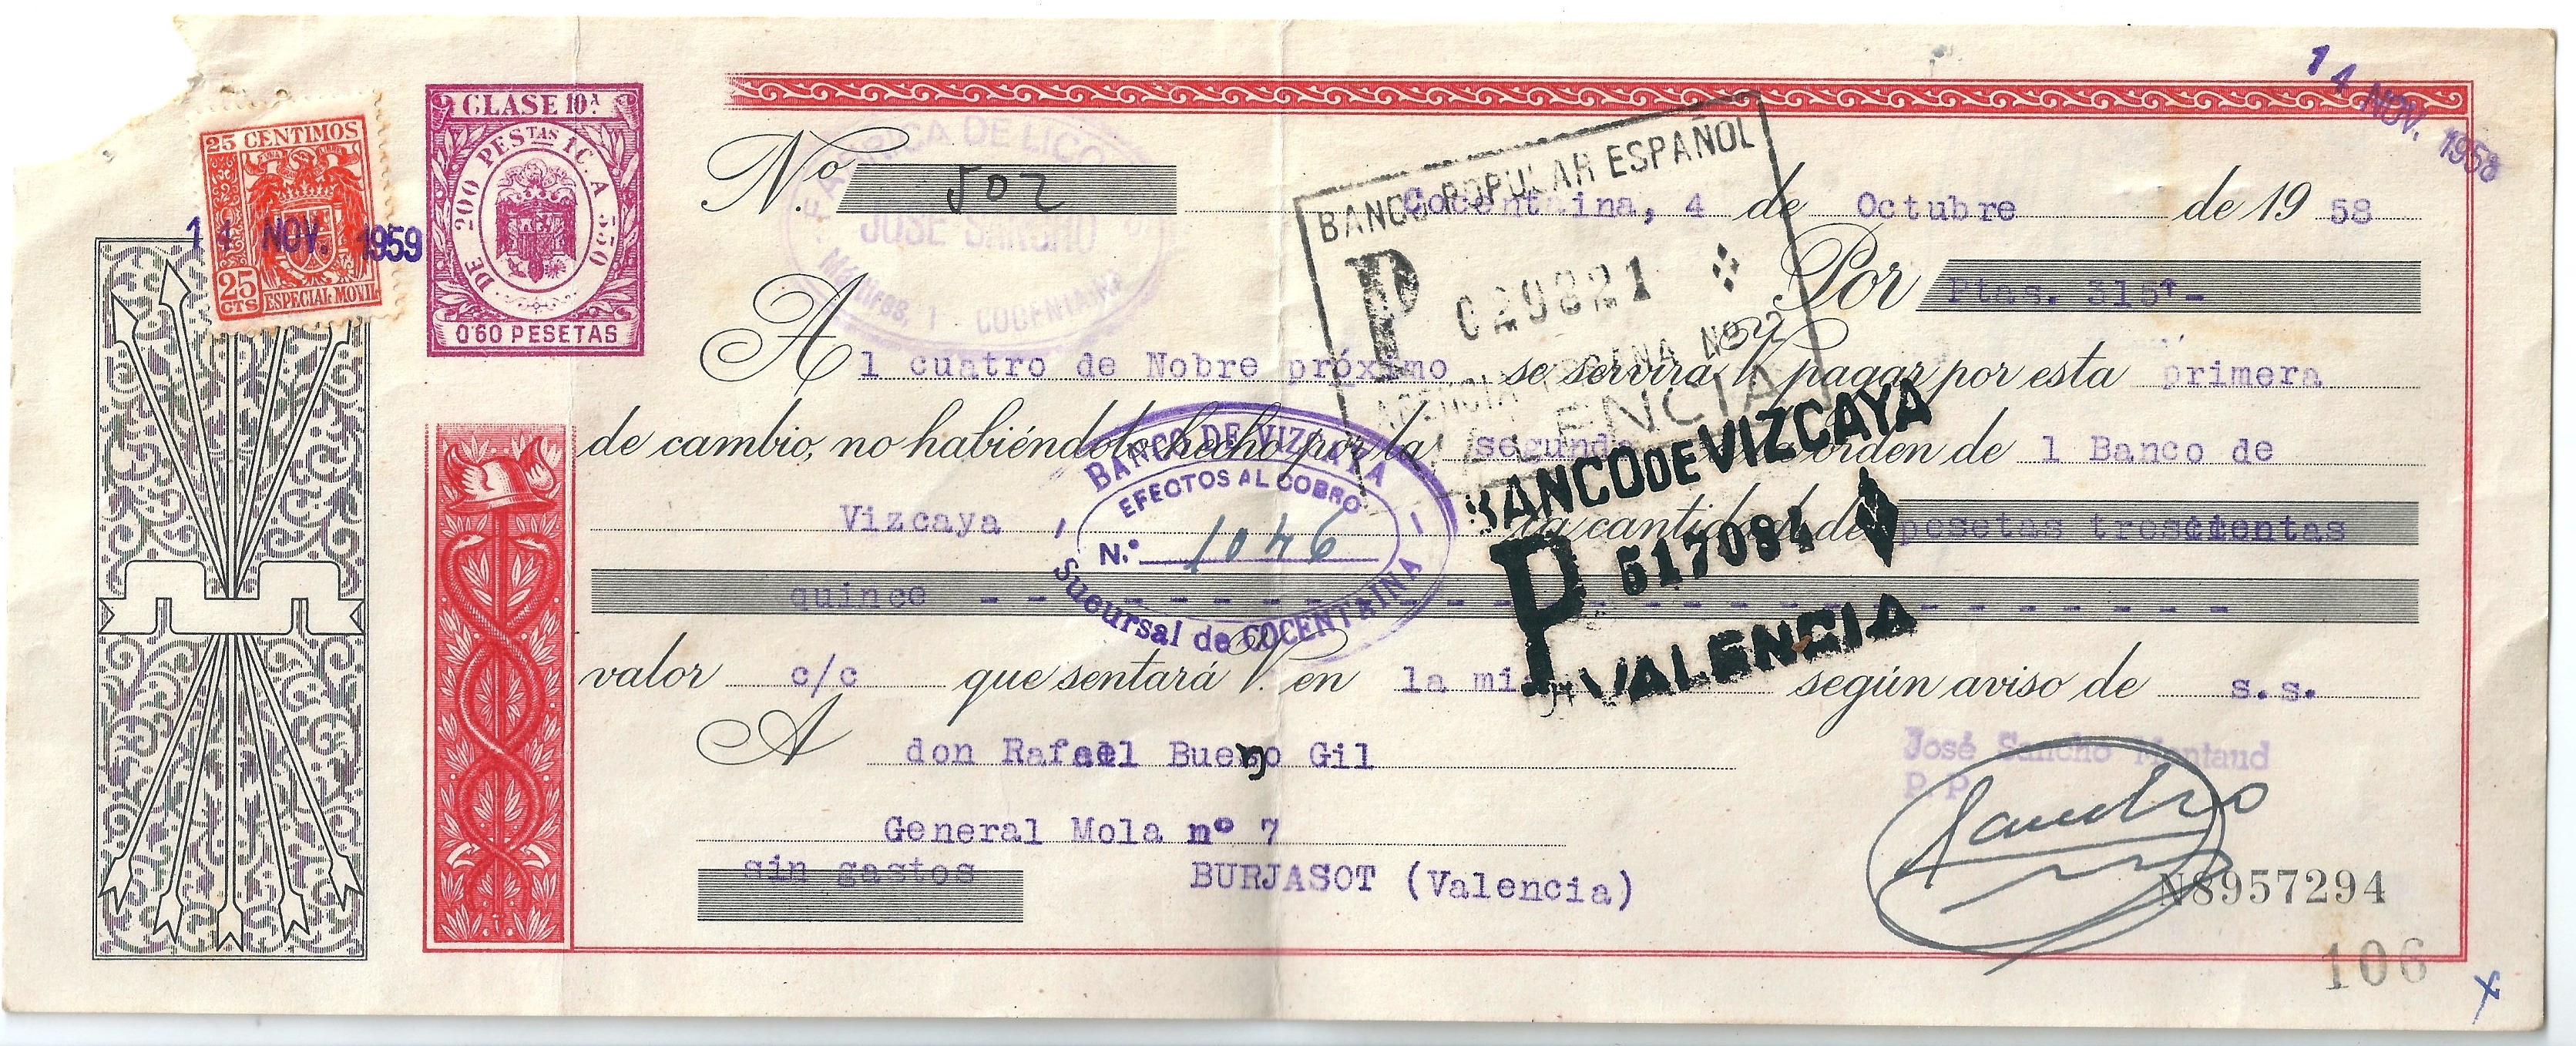 Ejemplo Letra De Cambio File:Letra de Cambio vencimiento 4 nov 1958 recto.jpg - Wikimedia Commons